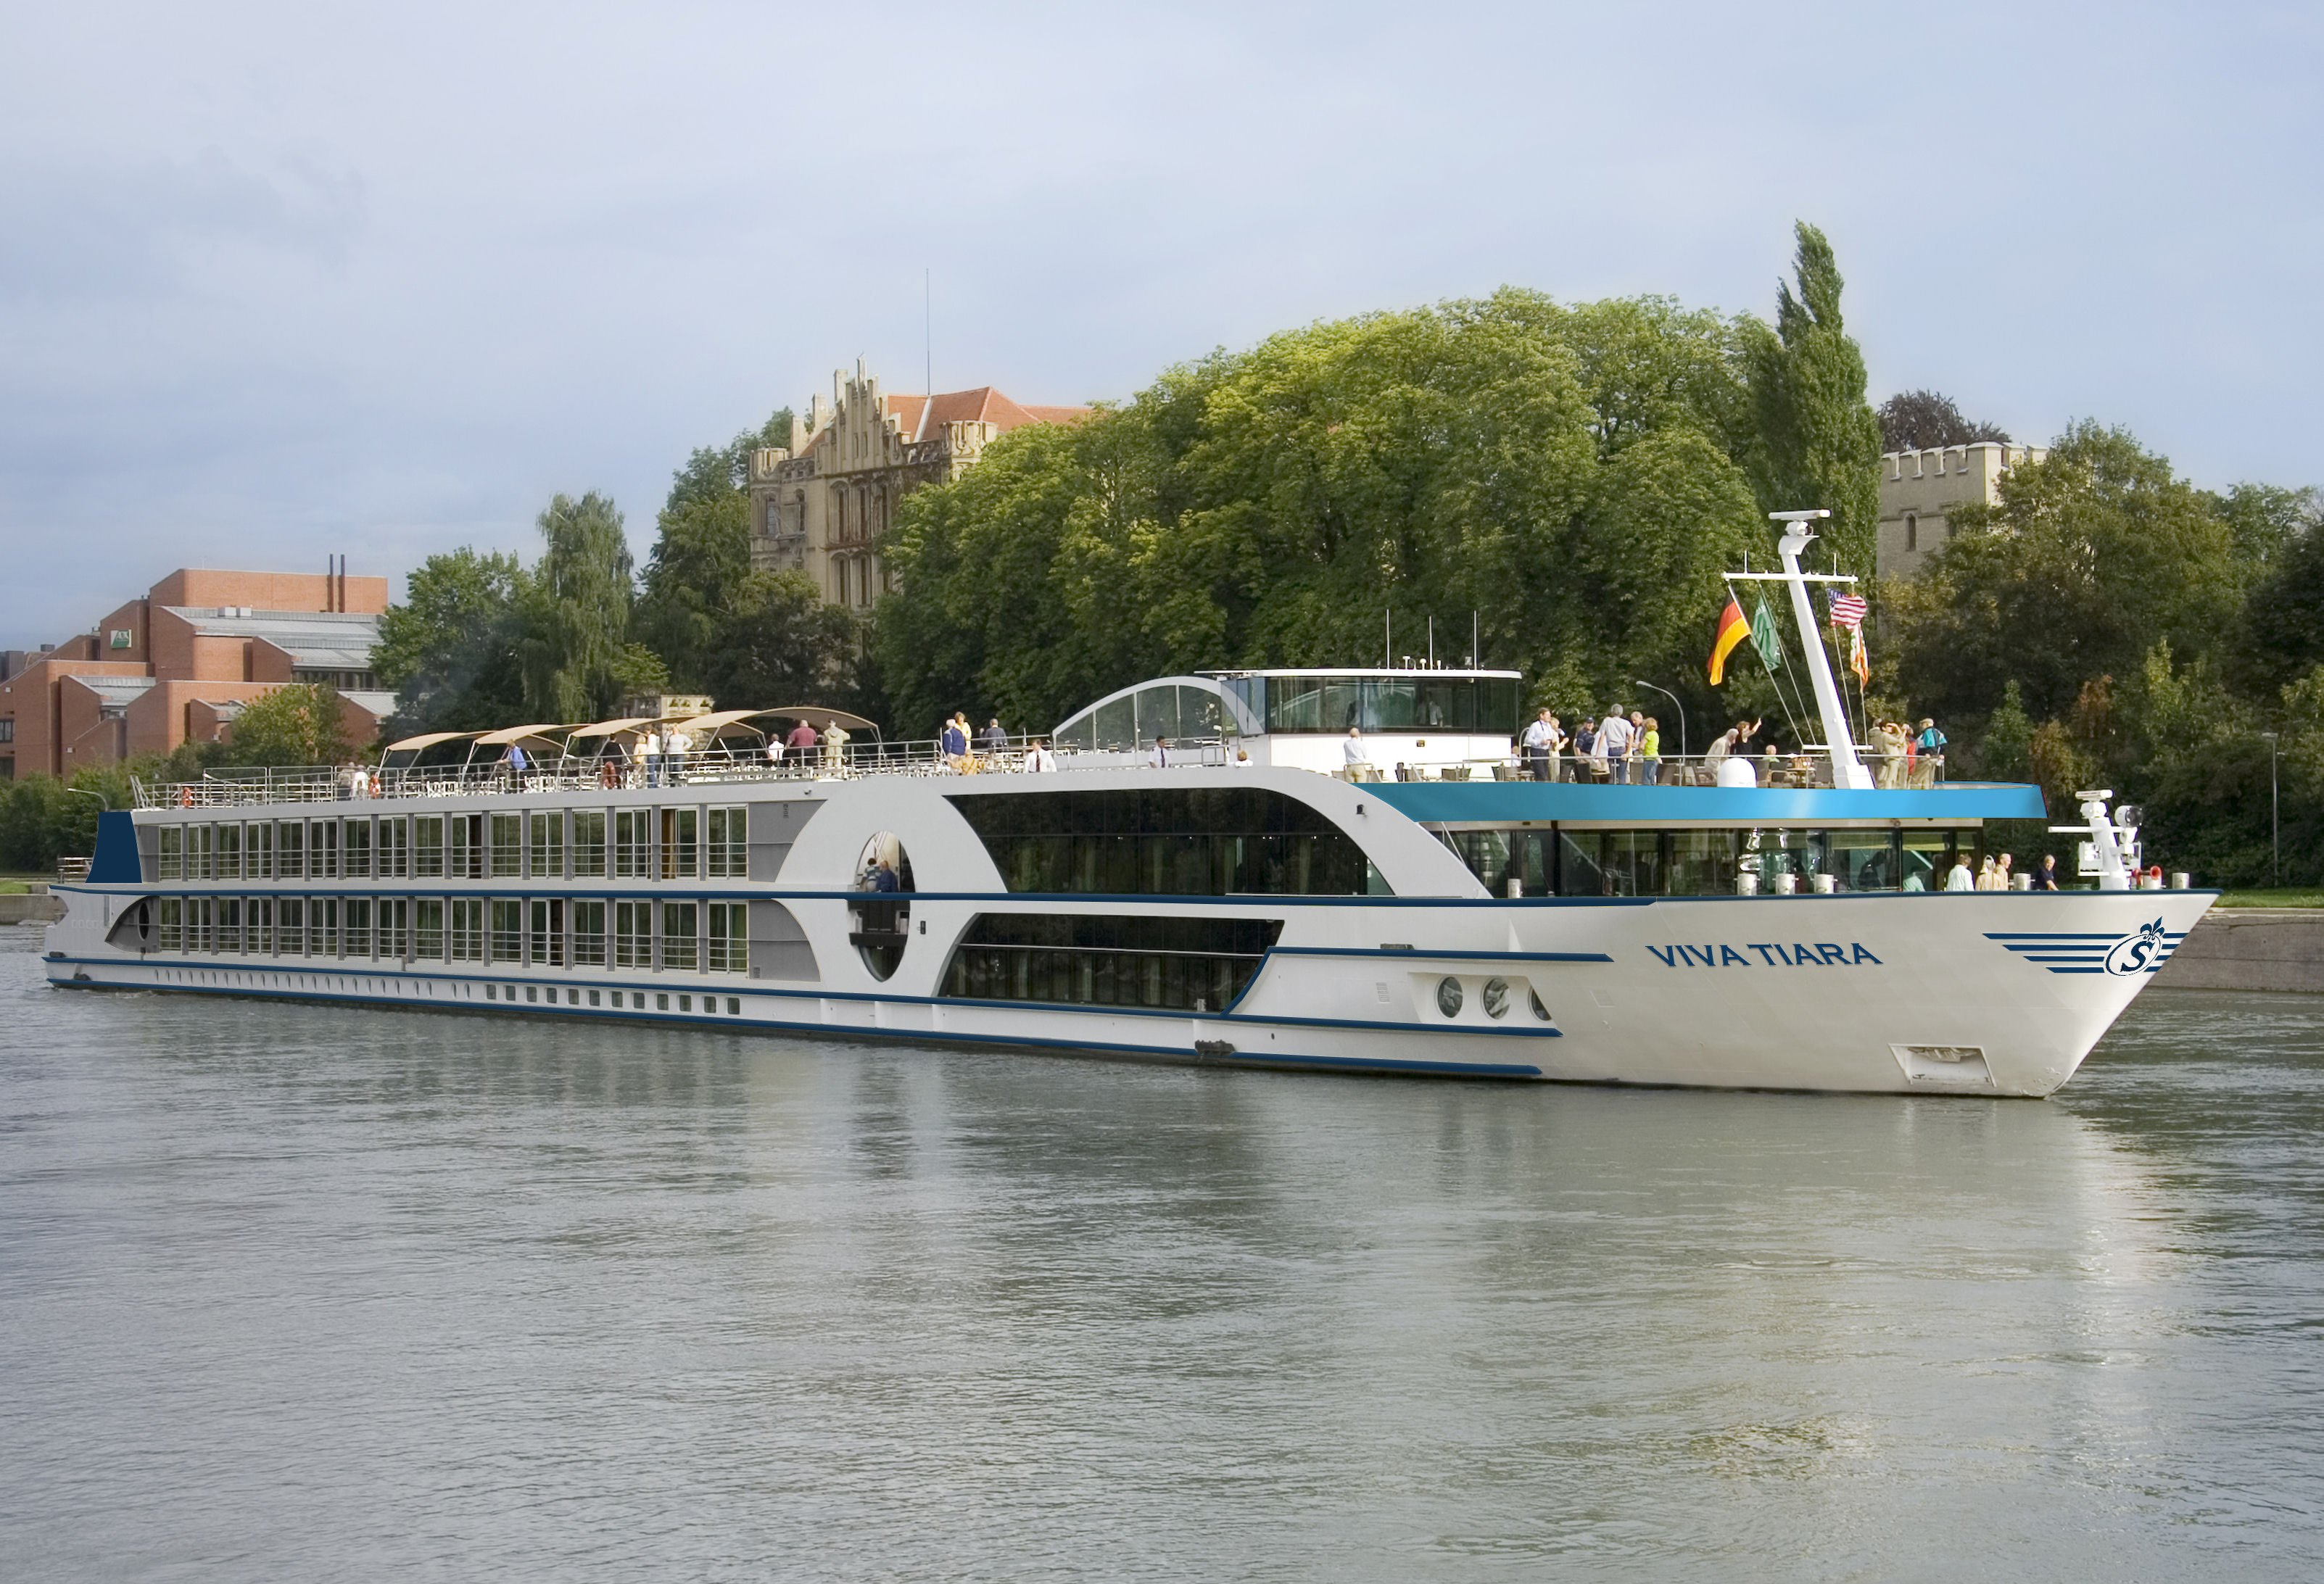 Die VIVA TIARA, die komplett renoviert und modernisiert wird, ist das erste eigene Schiff des jungen Flussreiseveranstalters Viva Cruises